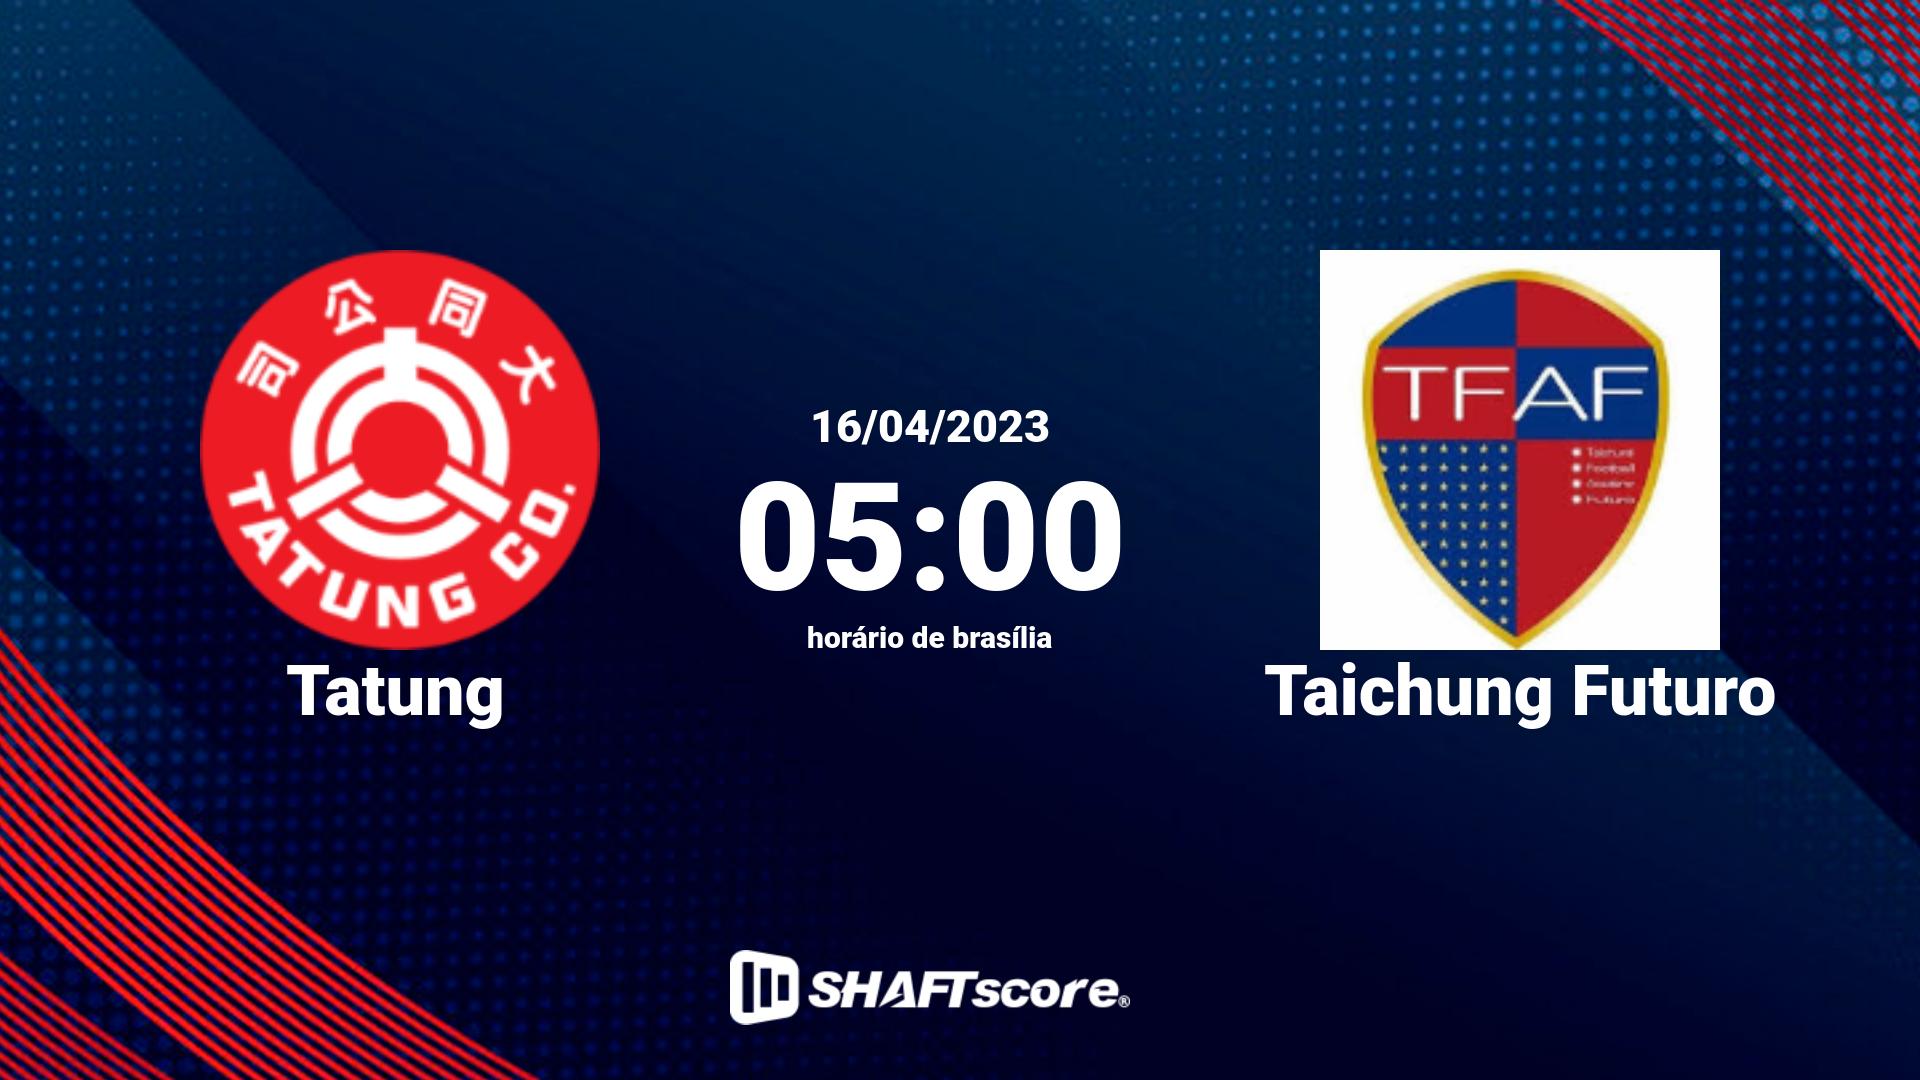 Estatísticas do jogo Tatung vs Taichung Futuro 16.04 05:00